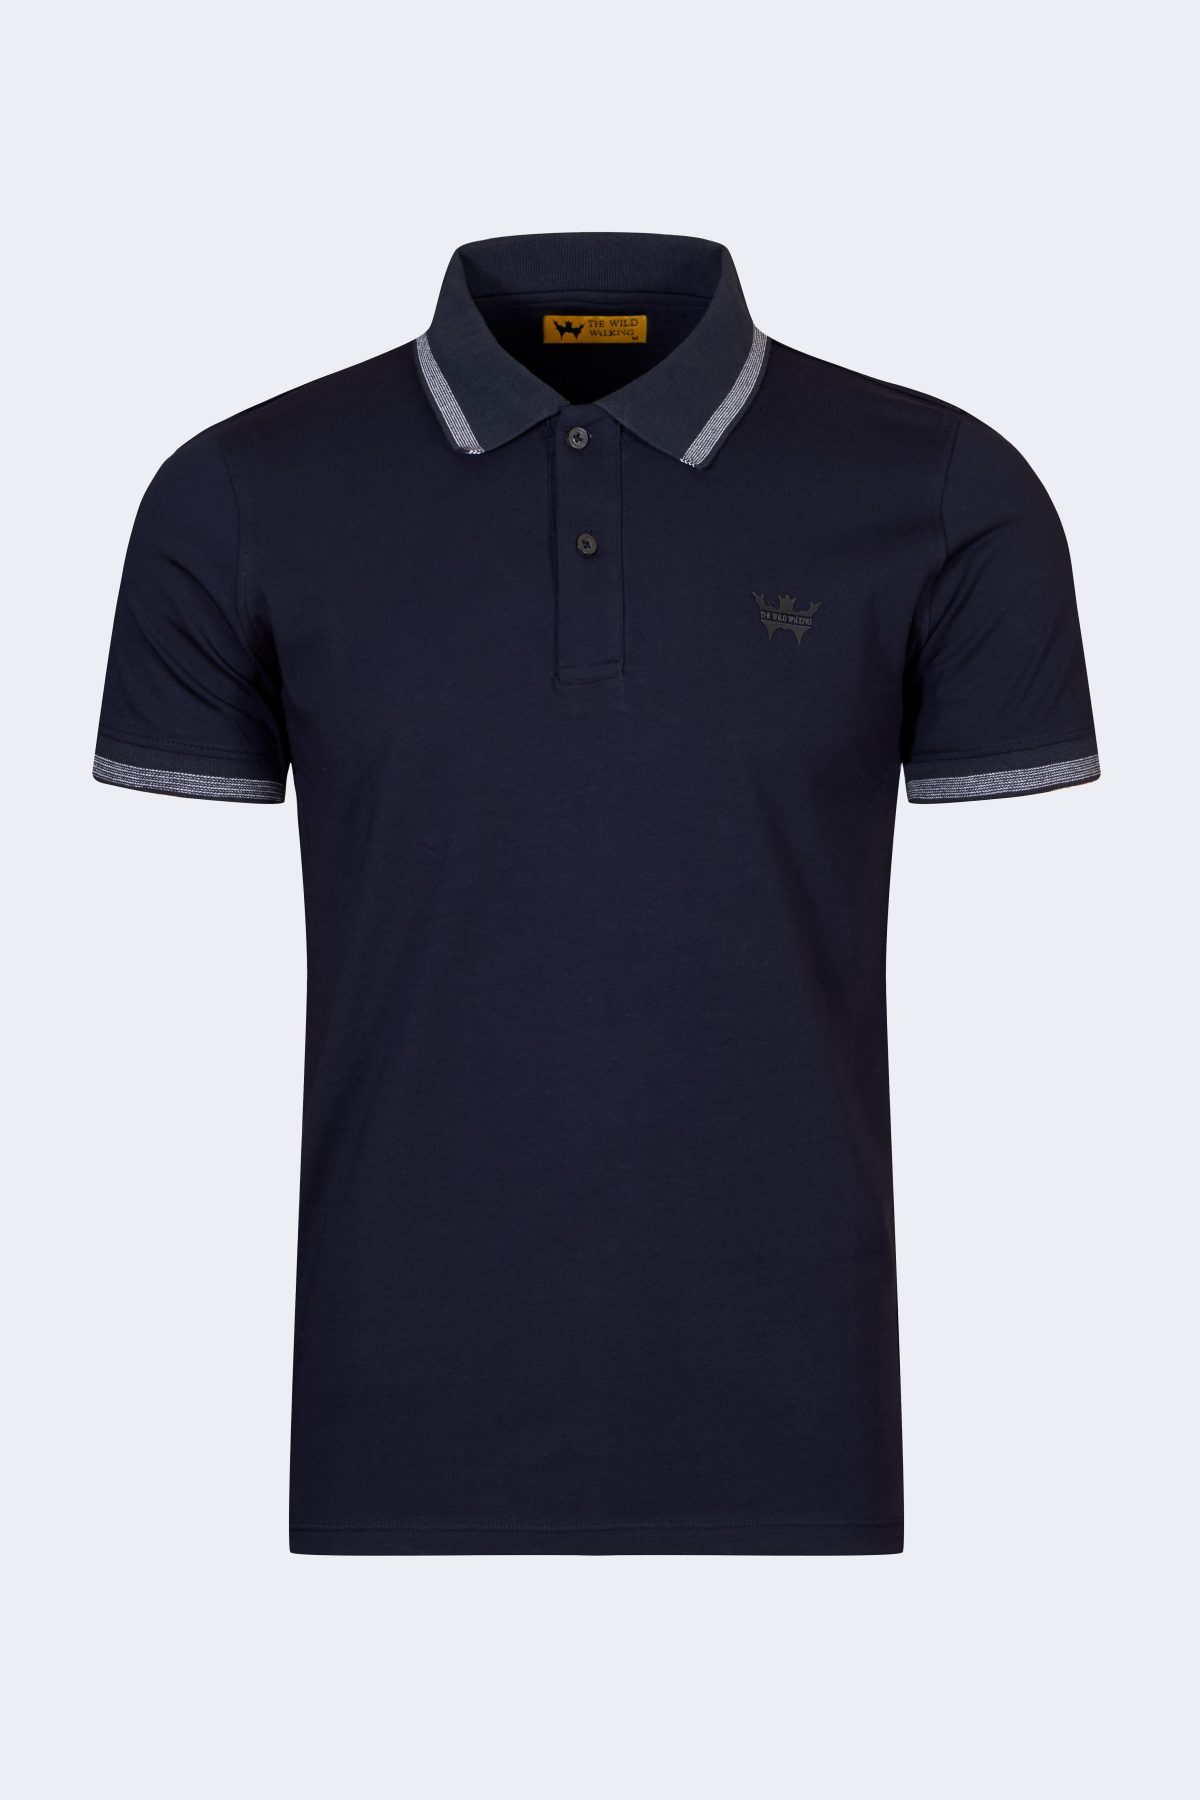 Men's polo collar t-shirt – Navy blue-0